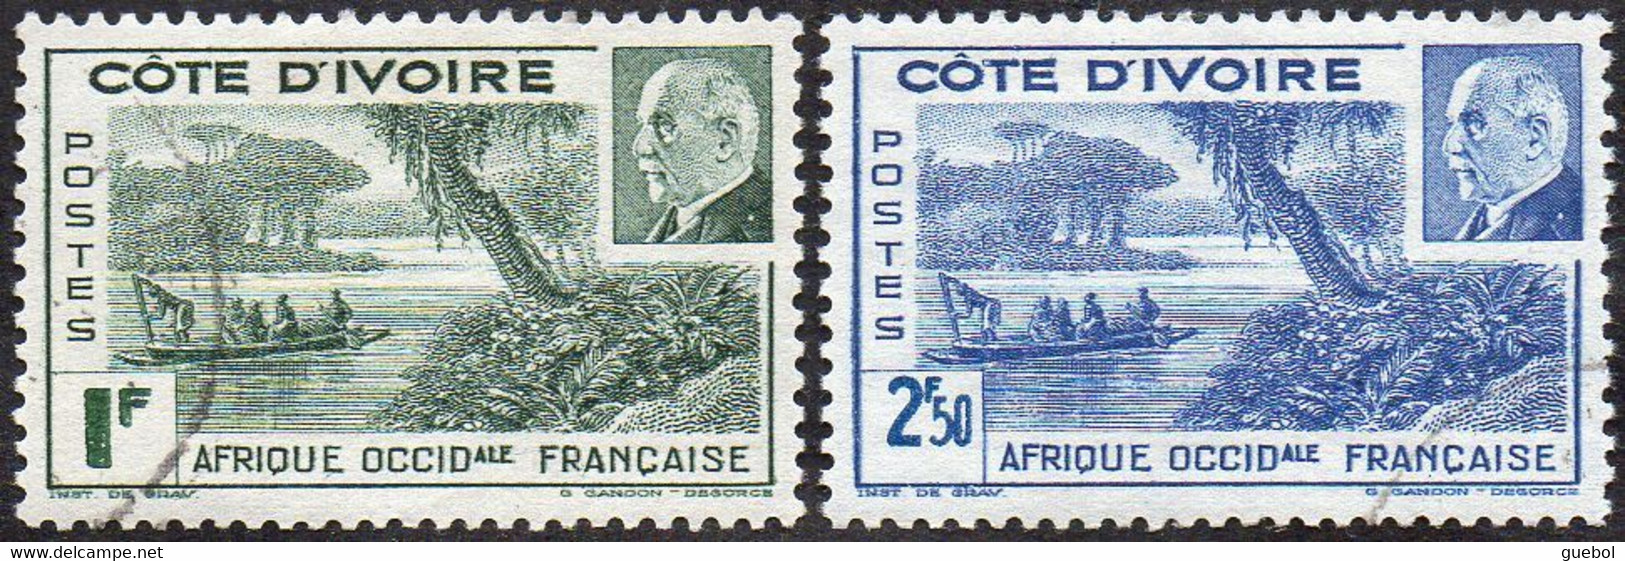 Détail De La Série Maréchal Pétain Obl. Cote D'Ivoire N° 169 Et 170 - Lagune Ebrié - 1941 Série Maréchal Pétain